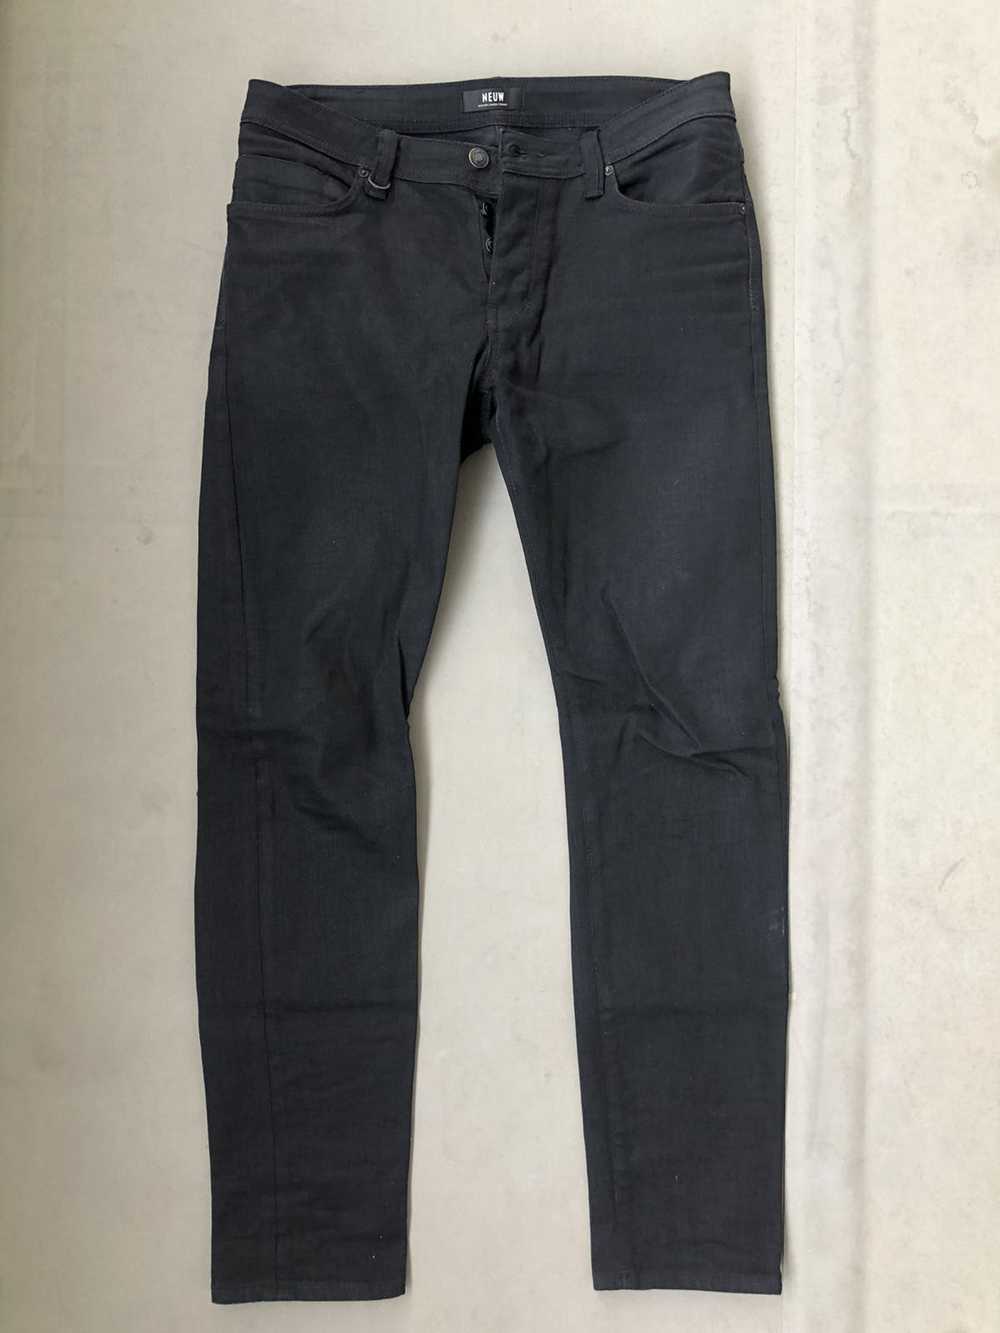 Neuw denim Iggy skinny black jeans - image 1